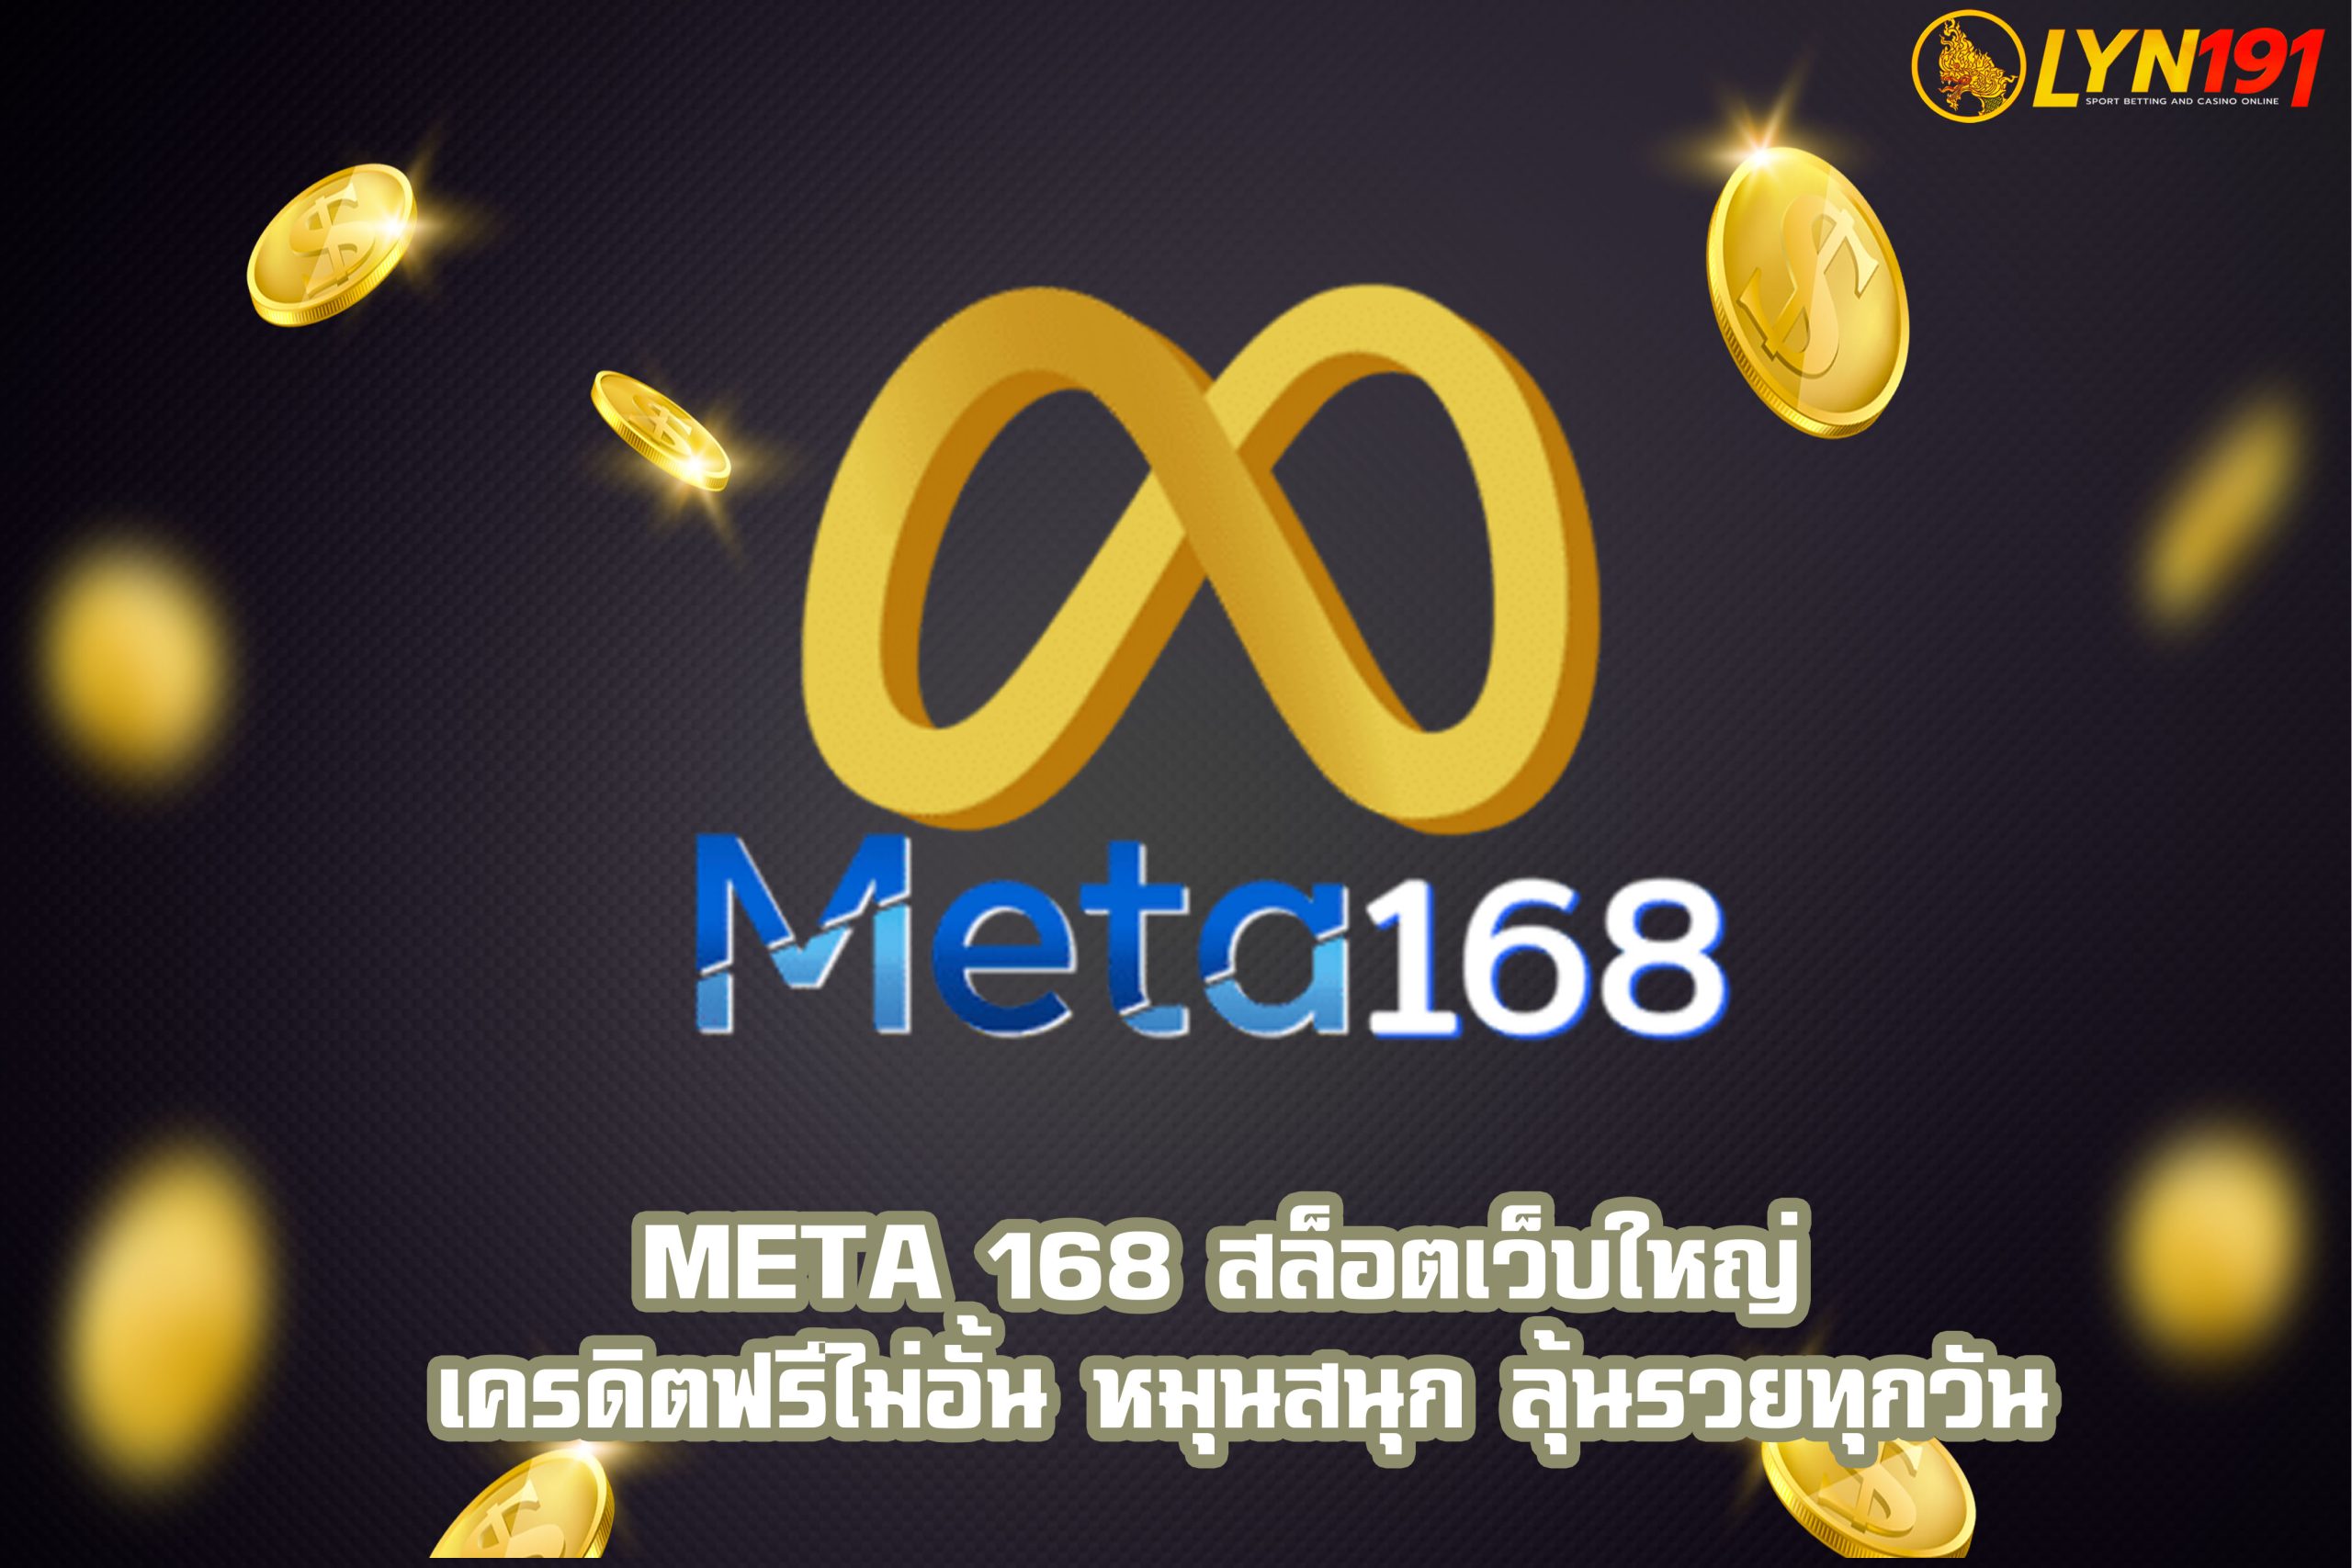 META 168 สล็อตเว็บใหญ่ เครดิตฟรีไม่อั้น หมุนสนุก ลุ้นรวยทุกวัน